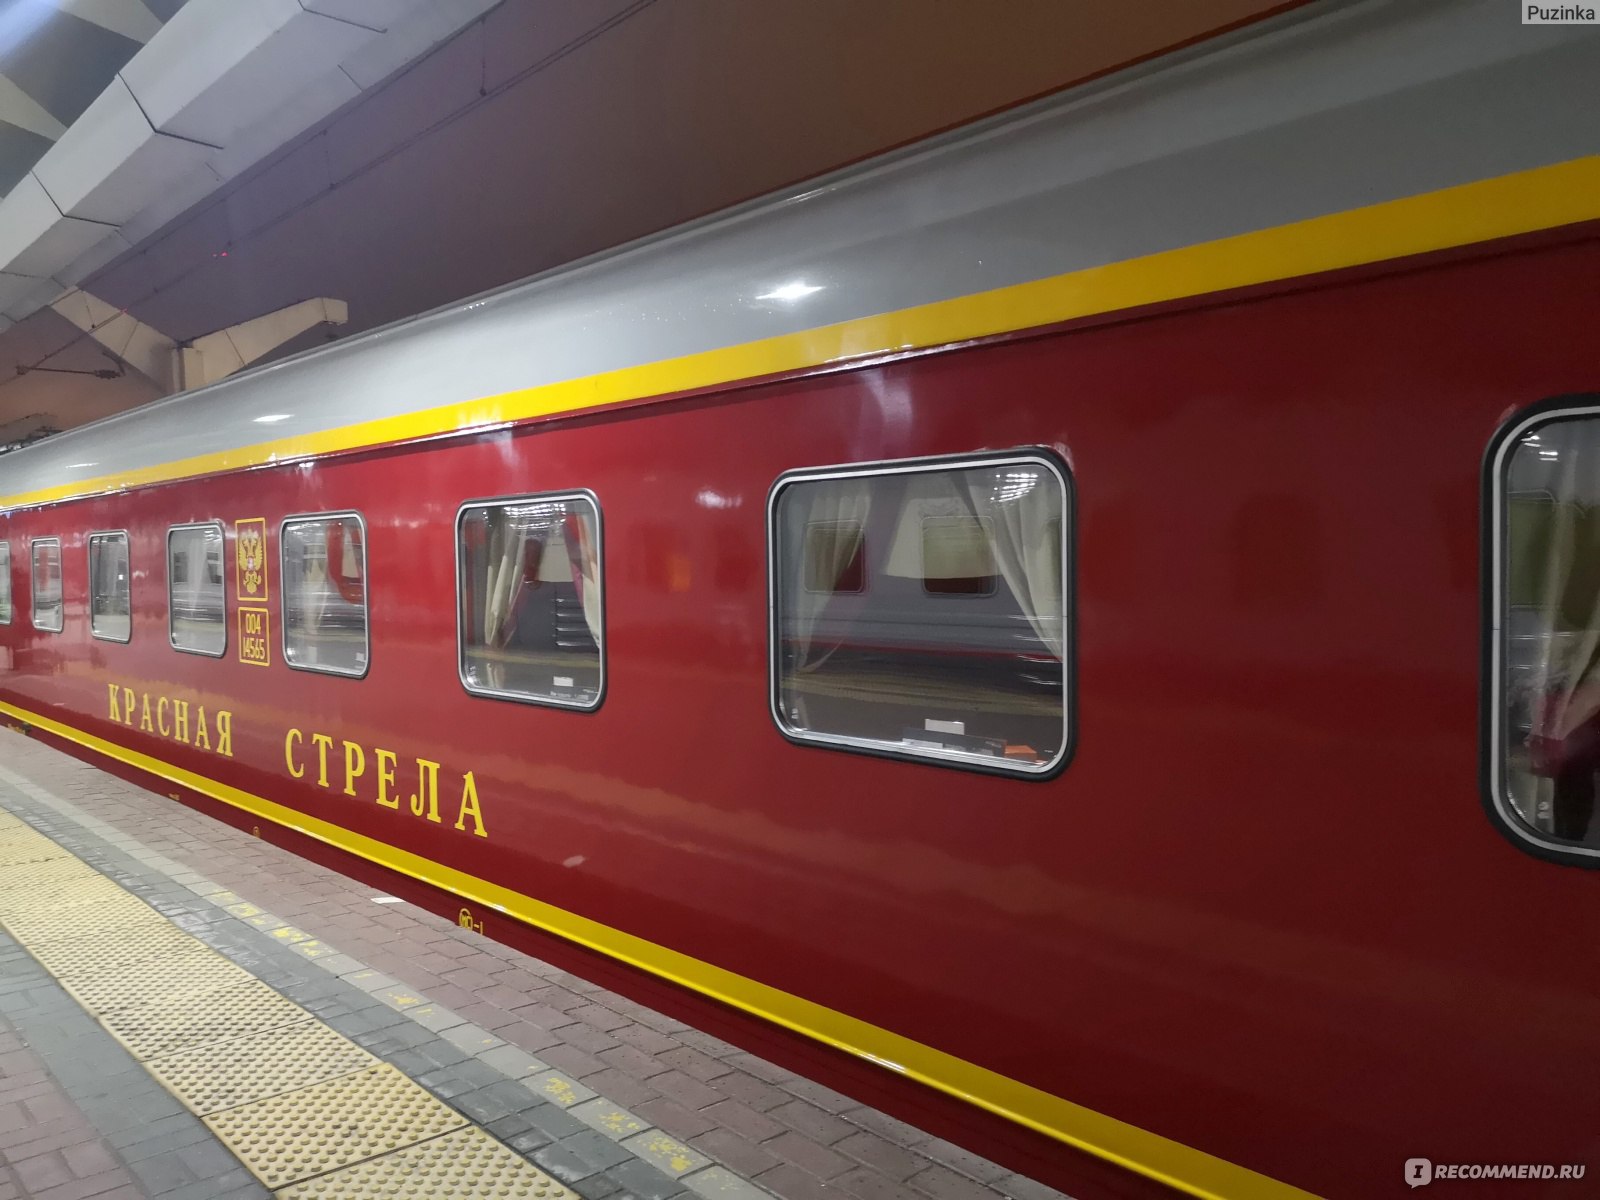 Фирменный поезд красная стрела 002а Москва Санкт-Петербург